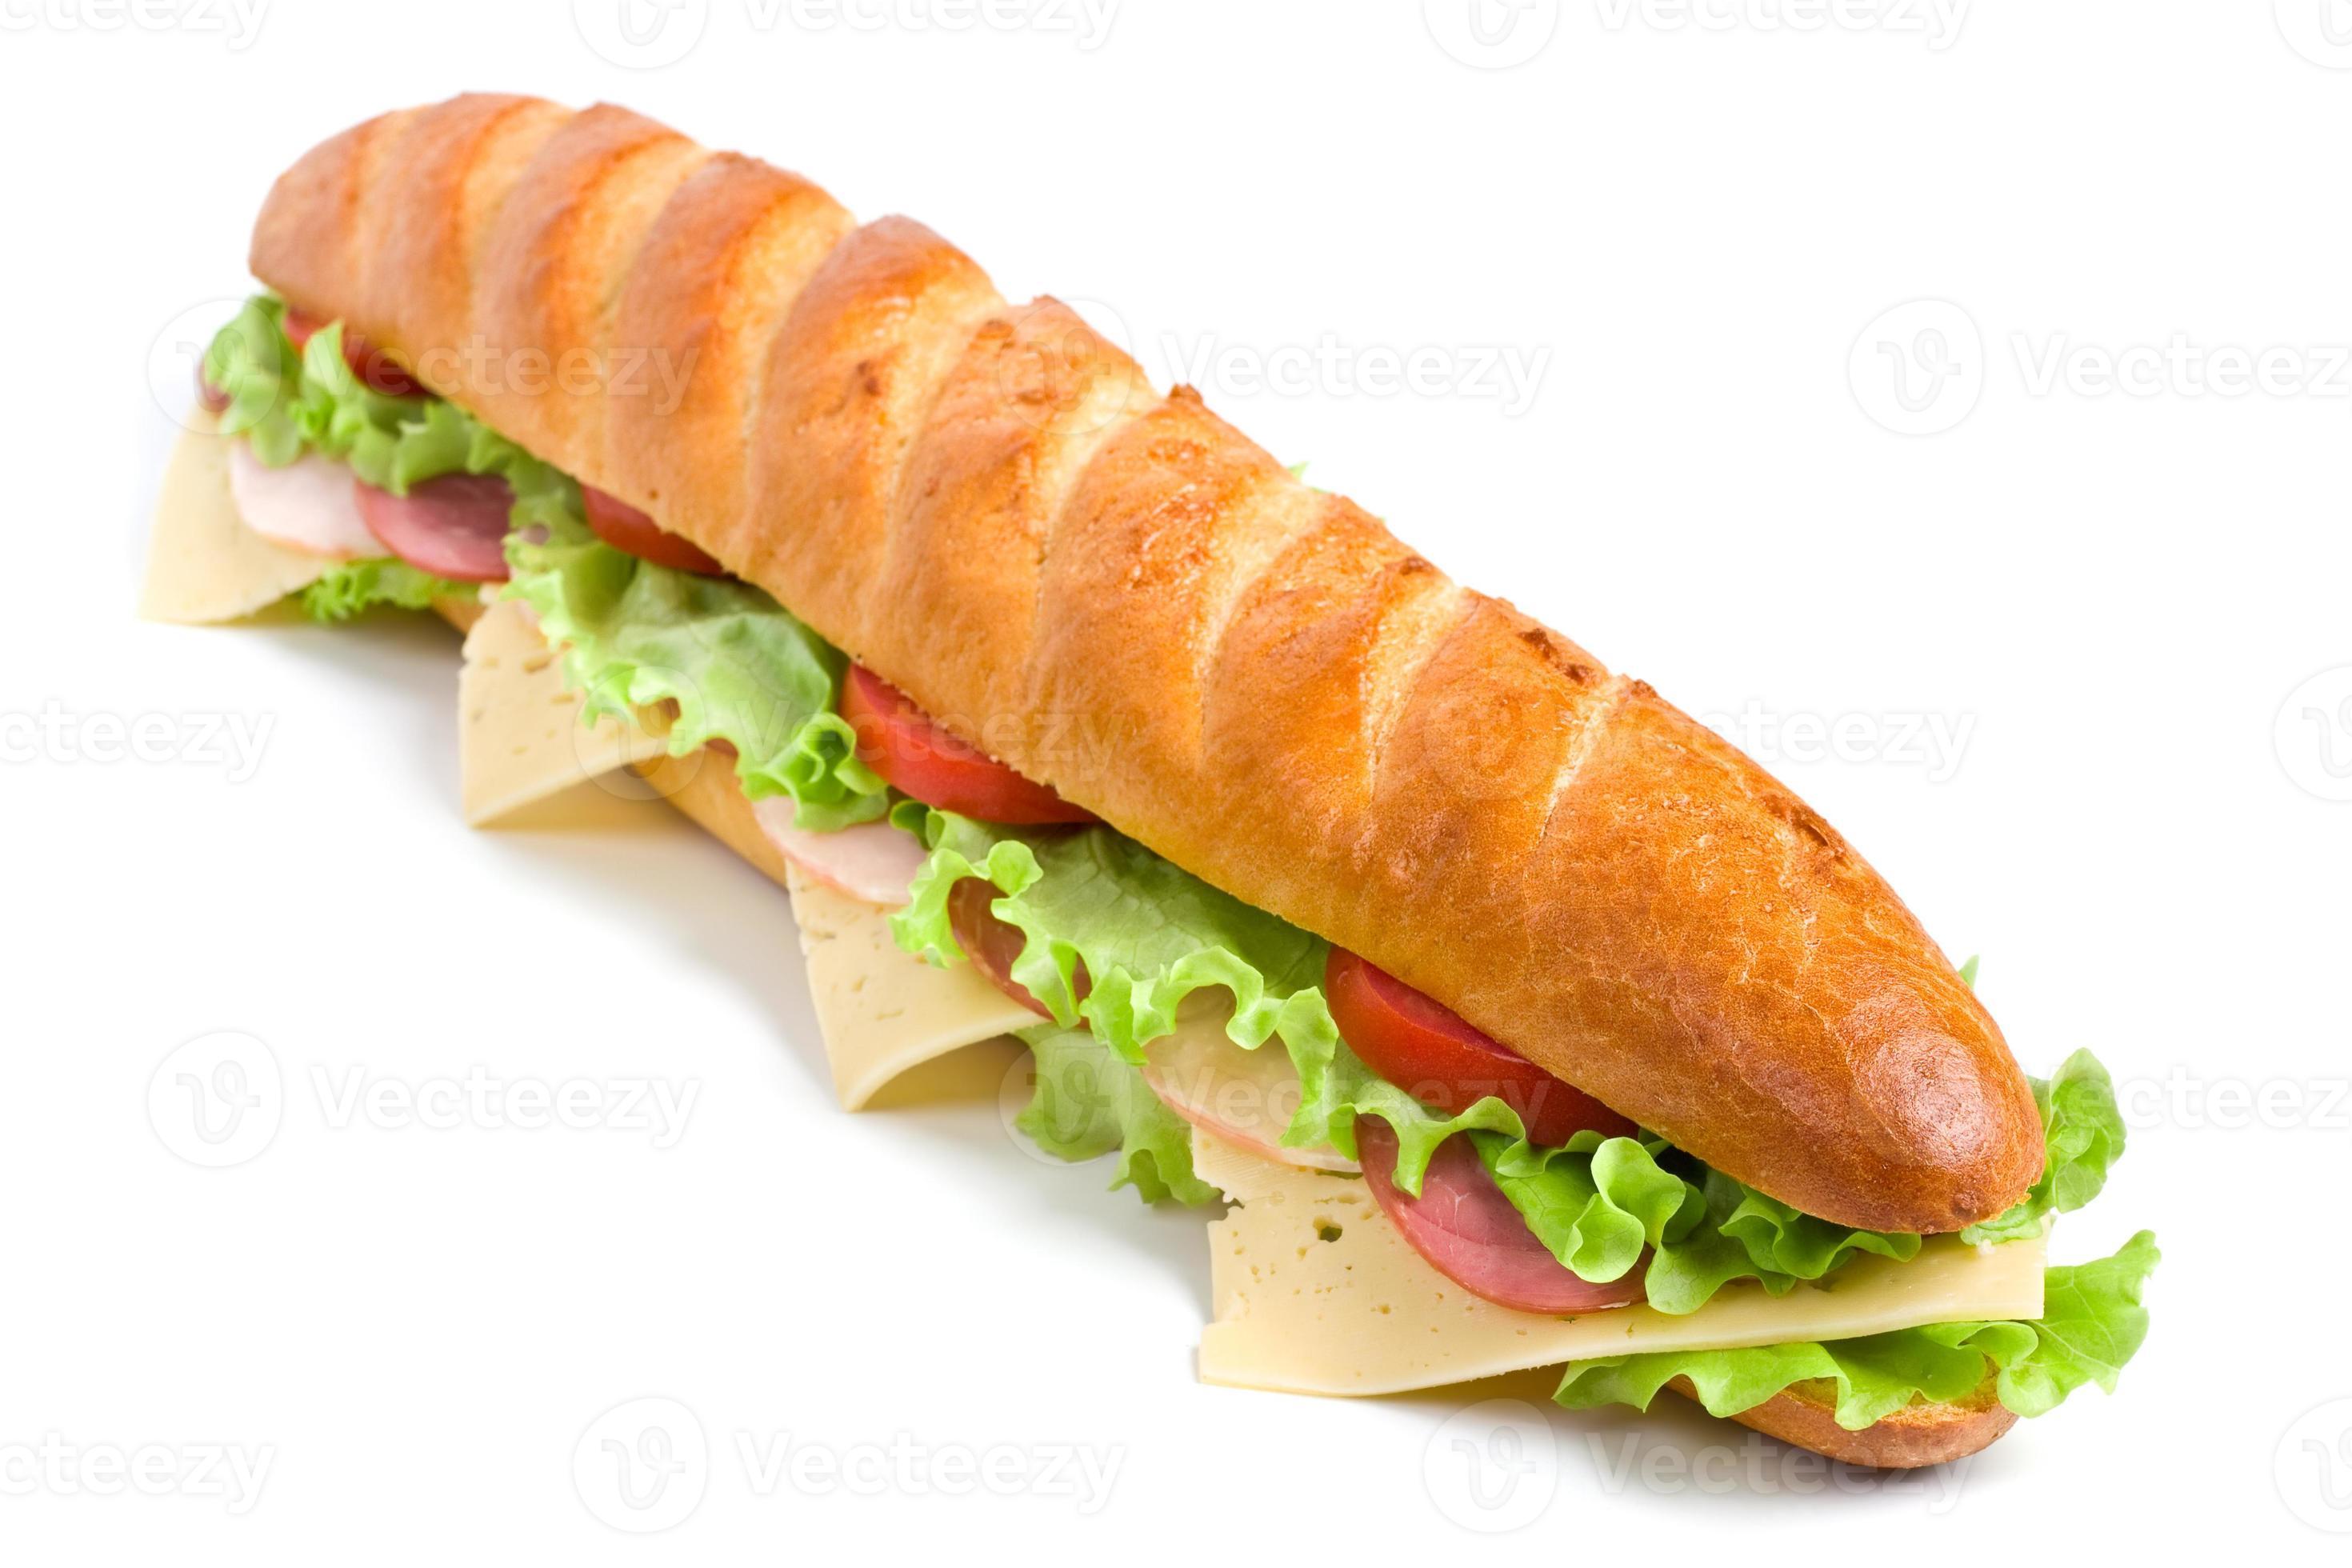 sándwich de baguette largo 768550 Foto de stock en Vecteezy